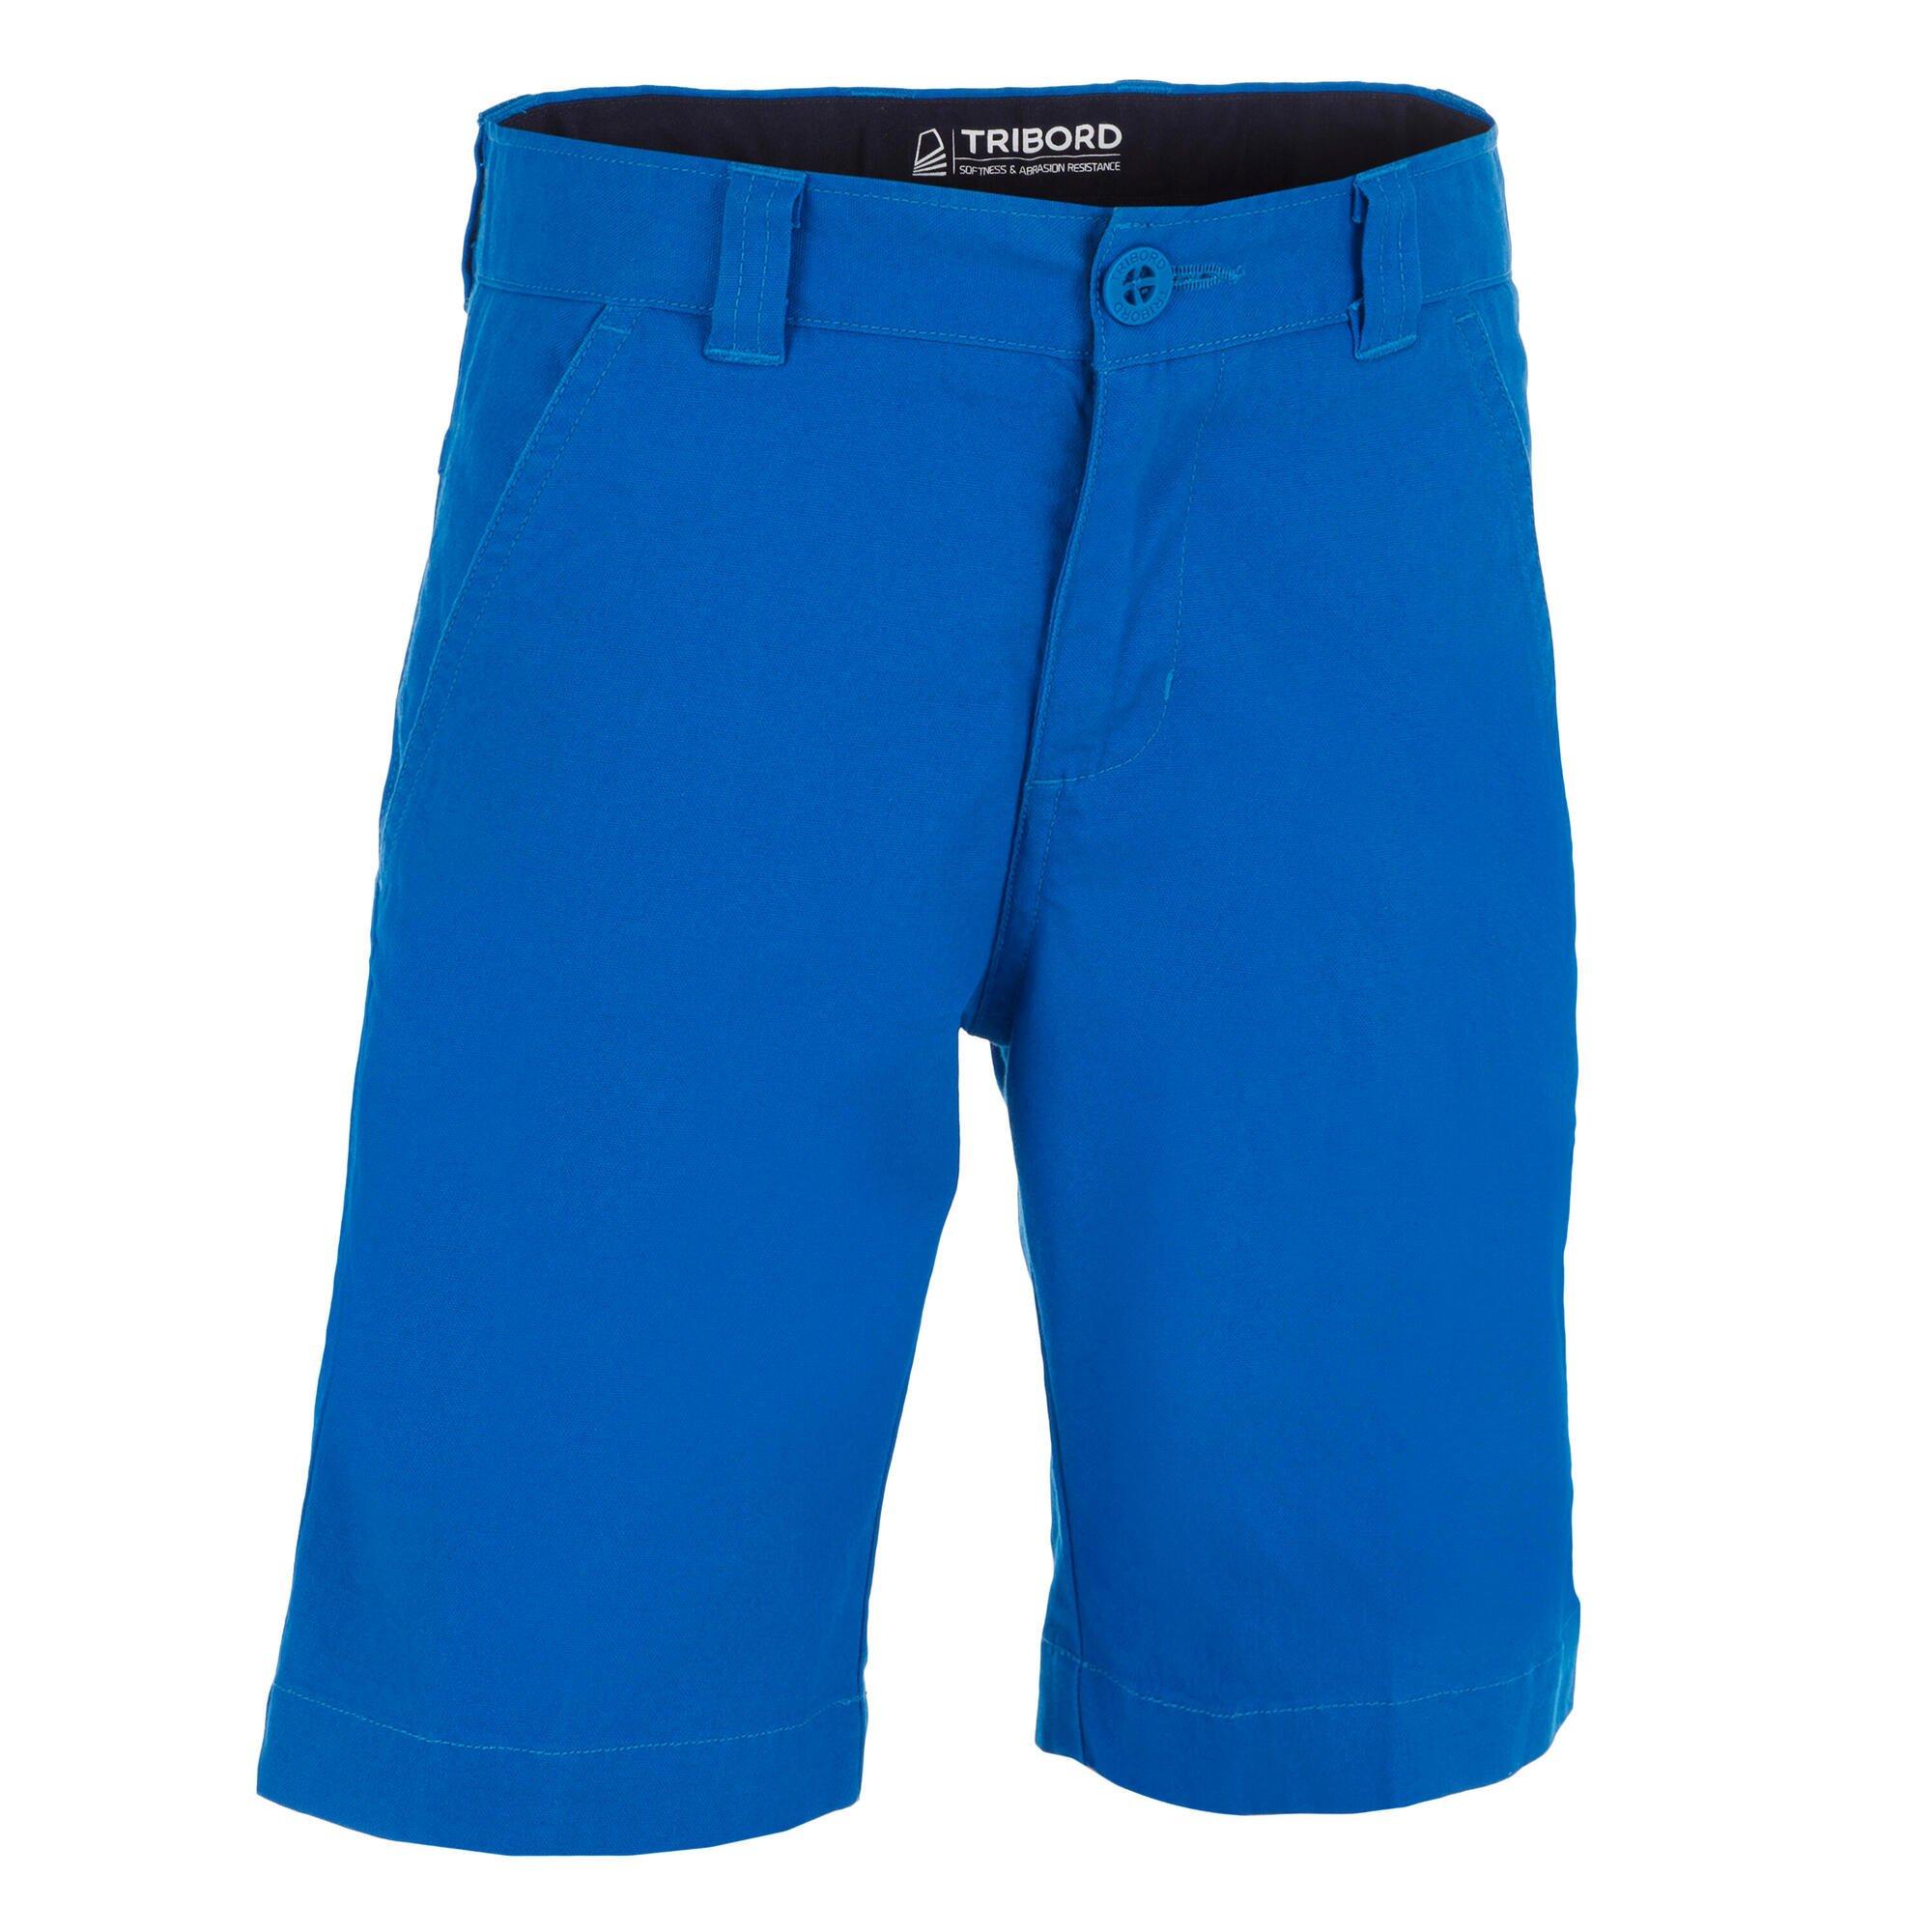 Парусные шорты-бермуды для мальчиков Decathlon Sailing 100 — яркие Tribord, синий титаник rms парусные трассы позолоченные посеребренные памятная монета подарок